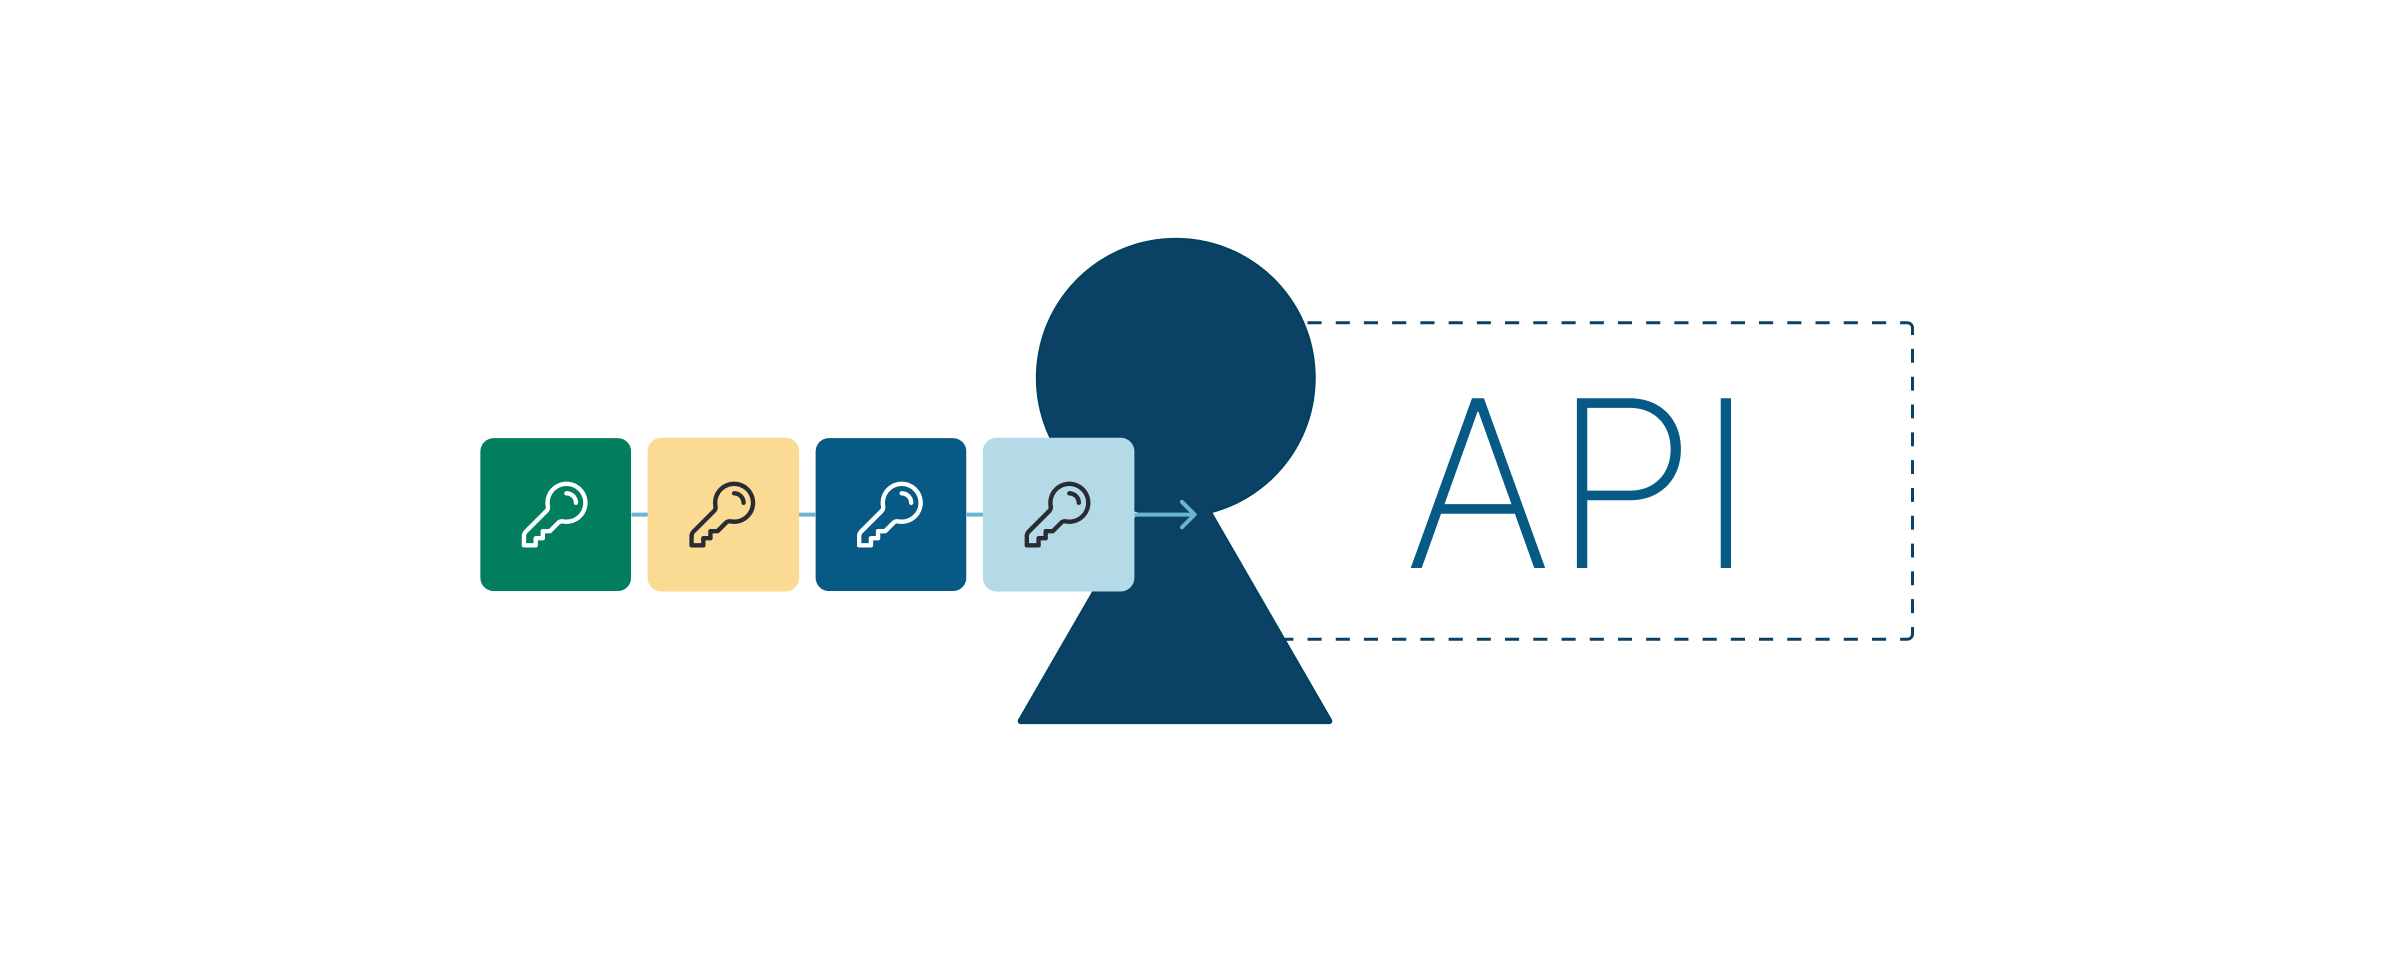 Illustrazione raffigurante quattro nuove chiavi API per un’autorizzazione sicura